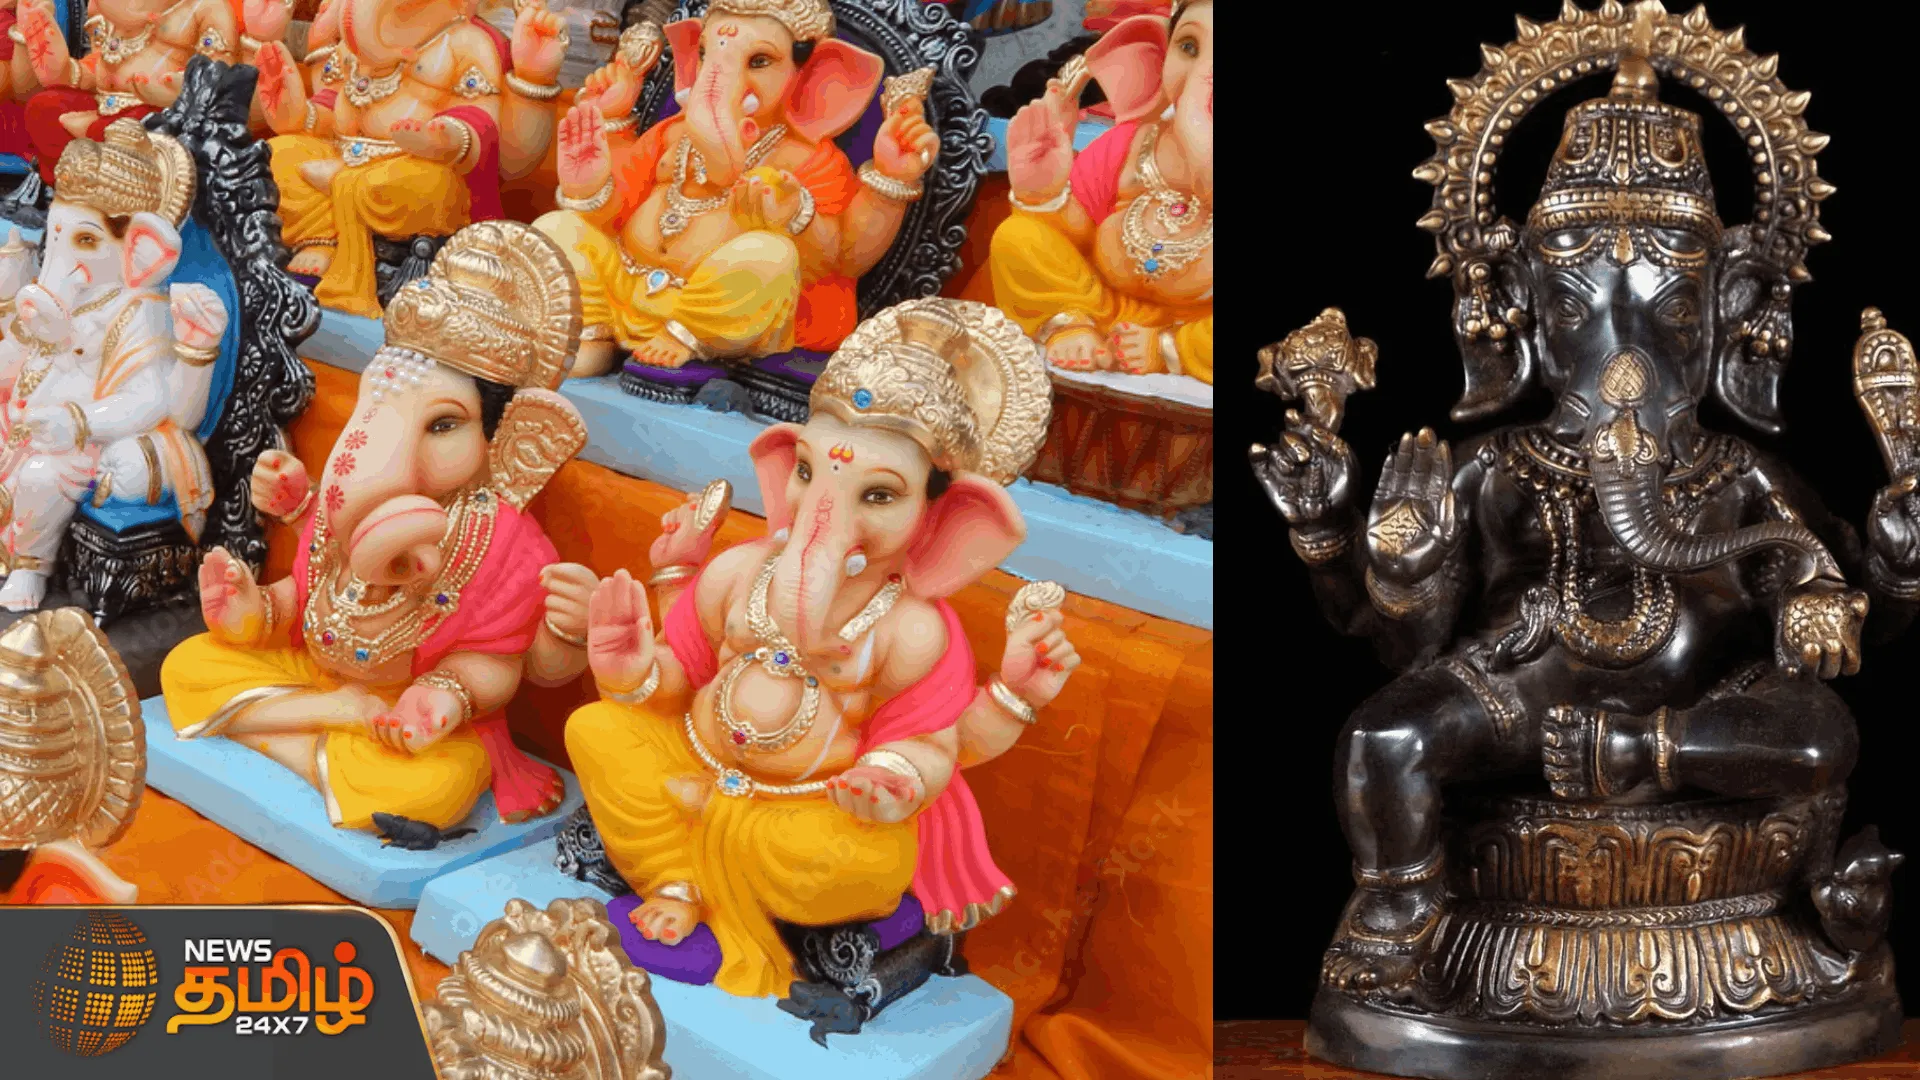  மதுரையில் விநாயகர் சிலை விற்பனை படுஜோர்  பல வடிவ சிலைகளை ஆர்வமுடன் வாங்கிய பொதுமக்கள் |   Ganesha Idol Sale in Madurai Padujor